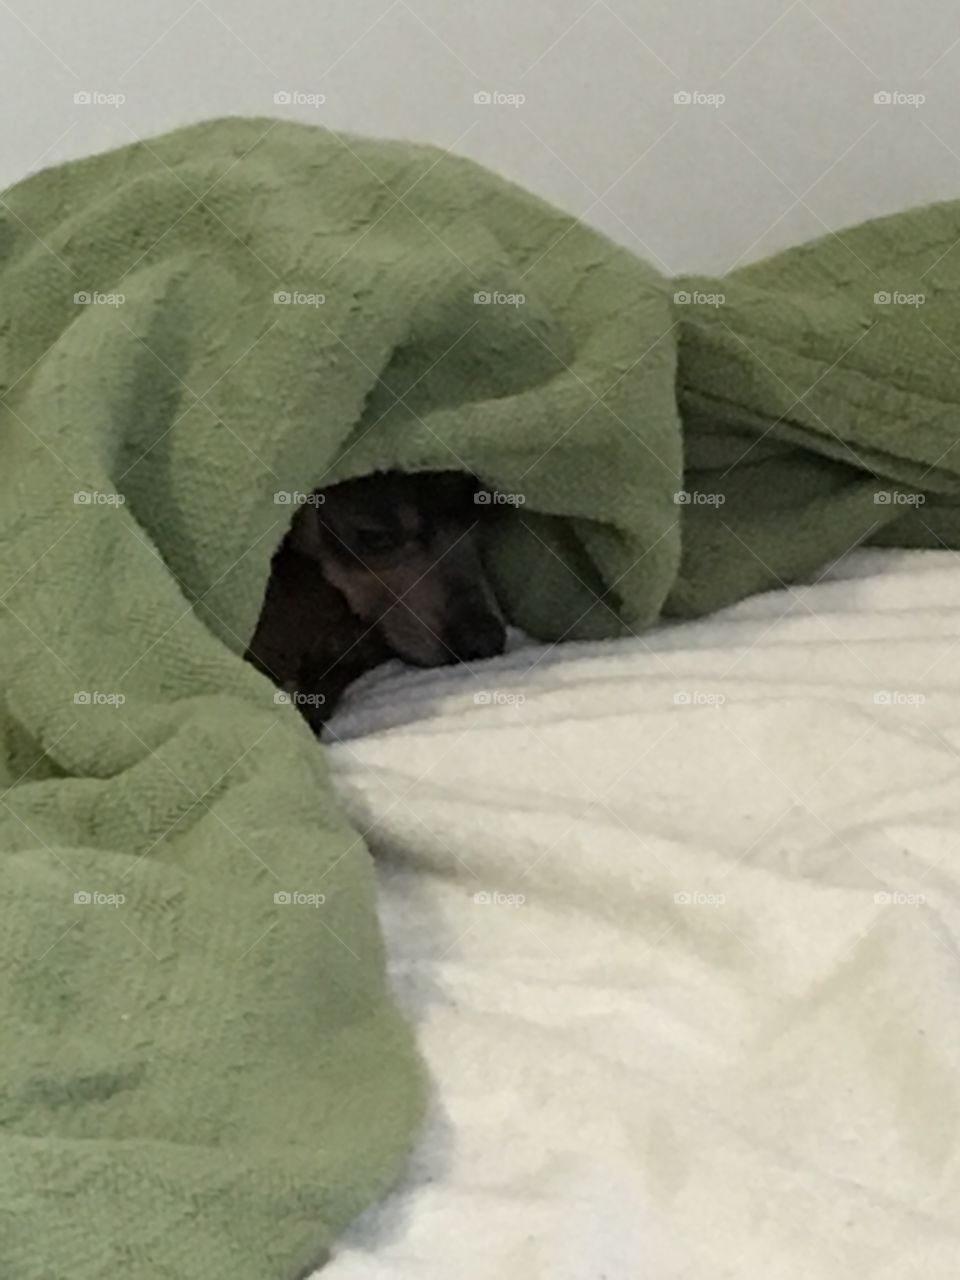 Dog in blanket




